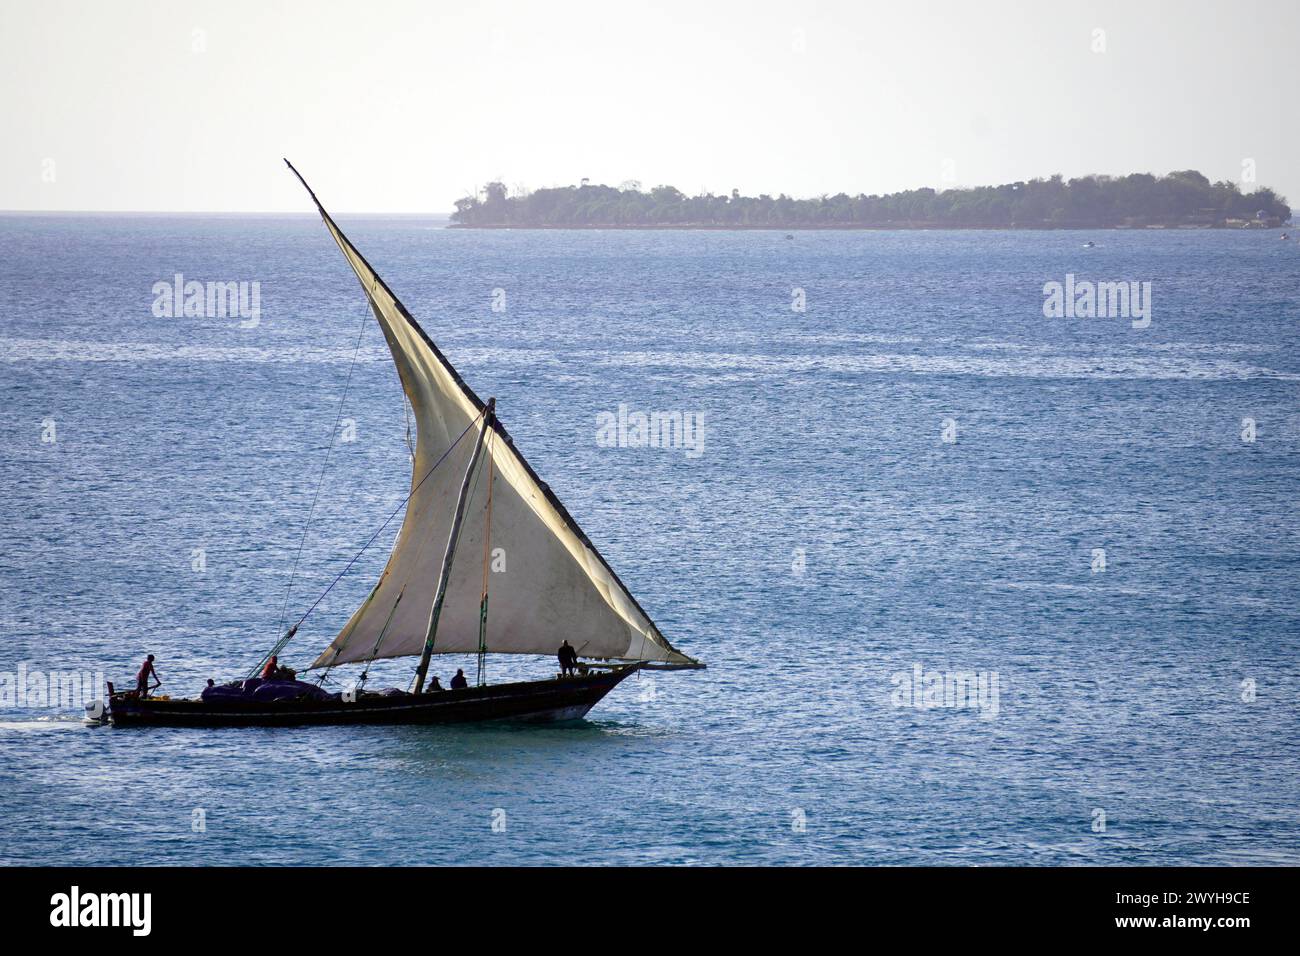 Dhow naviguant sur une mer calme avec une île au loin Banque D'Images